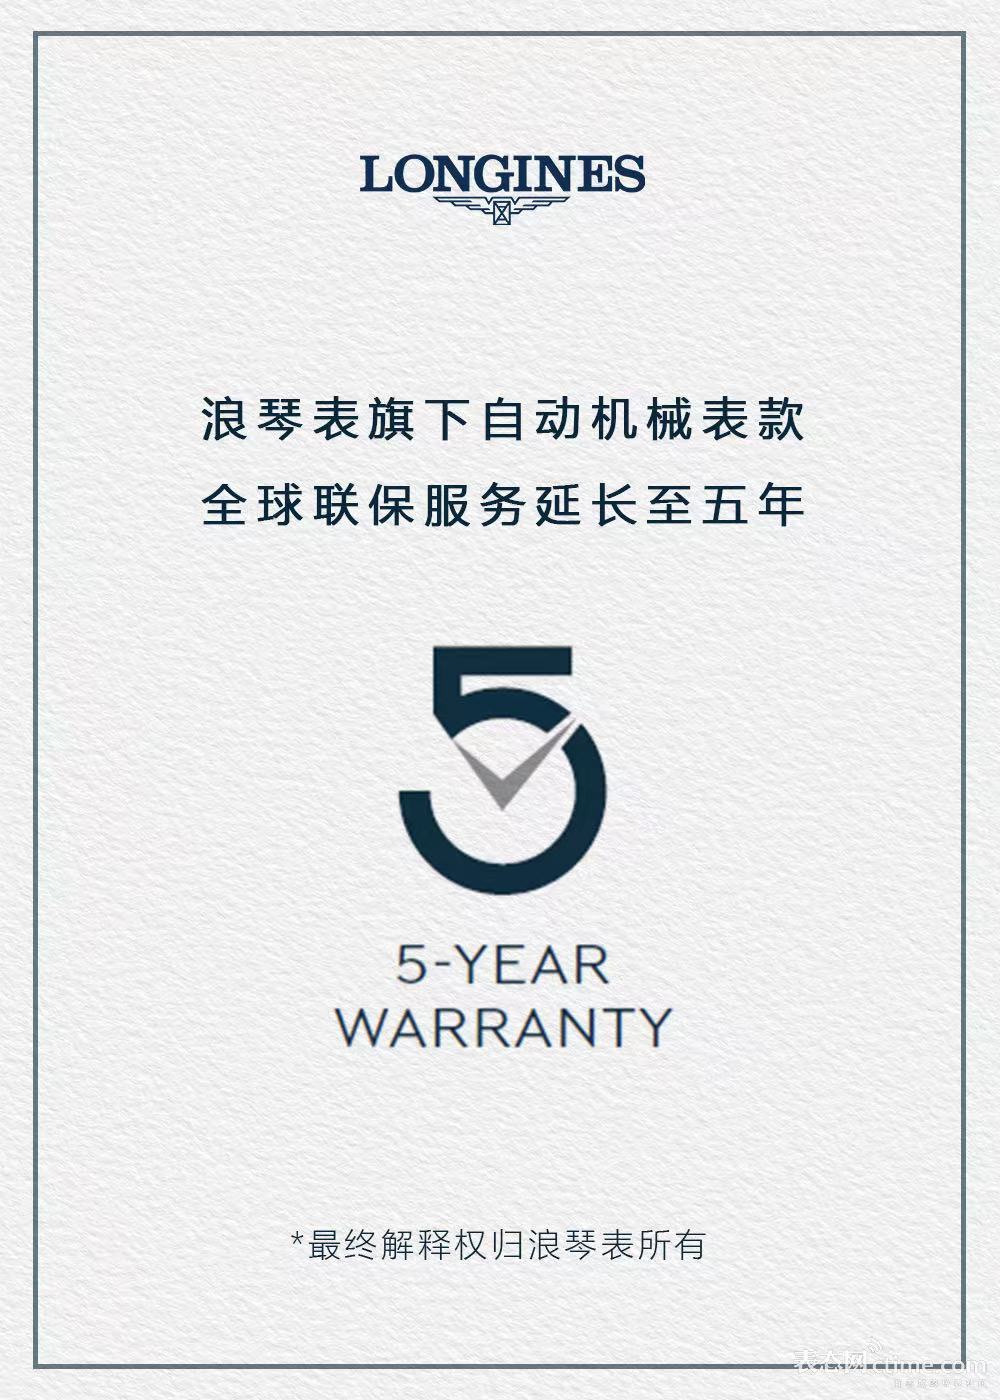 浪琴表旗下自动机械表款保修服务延长至五年.jpg